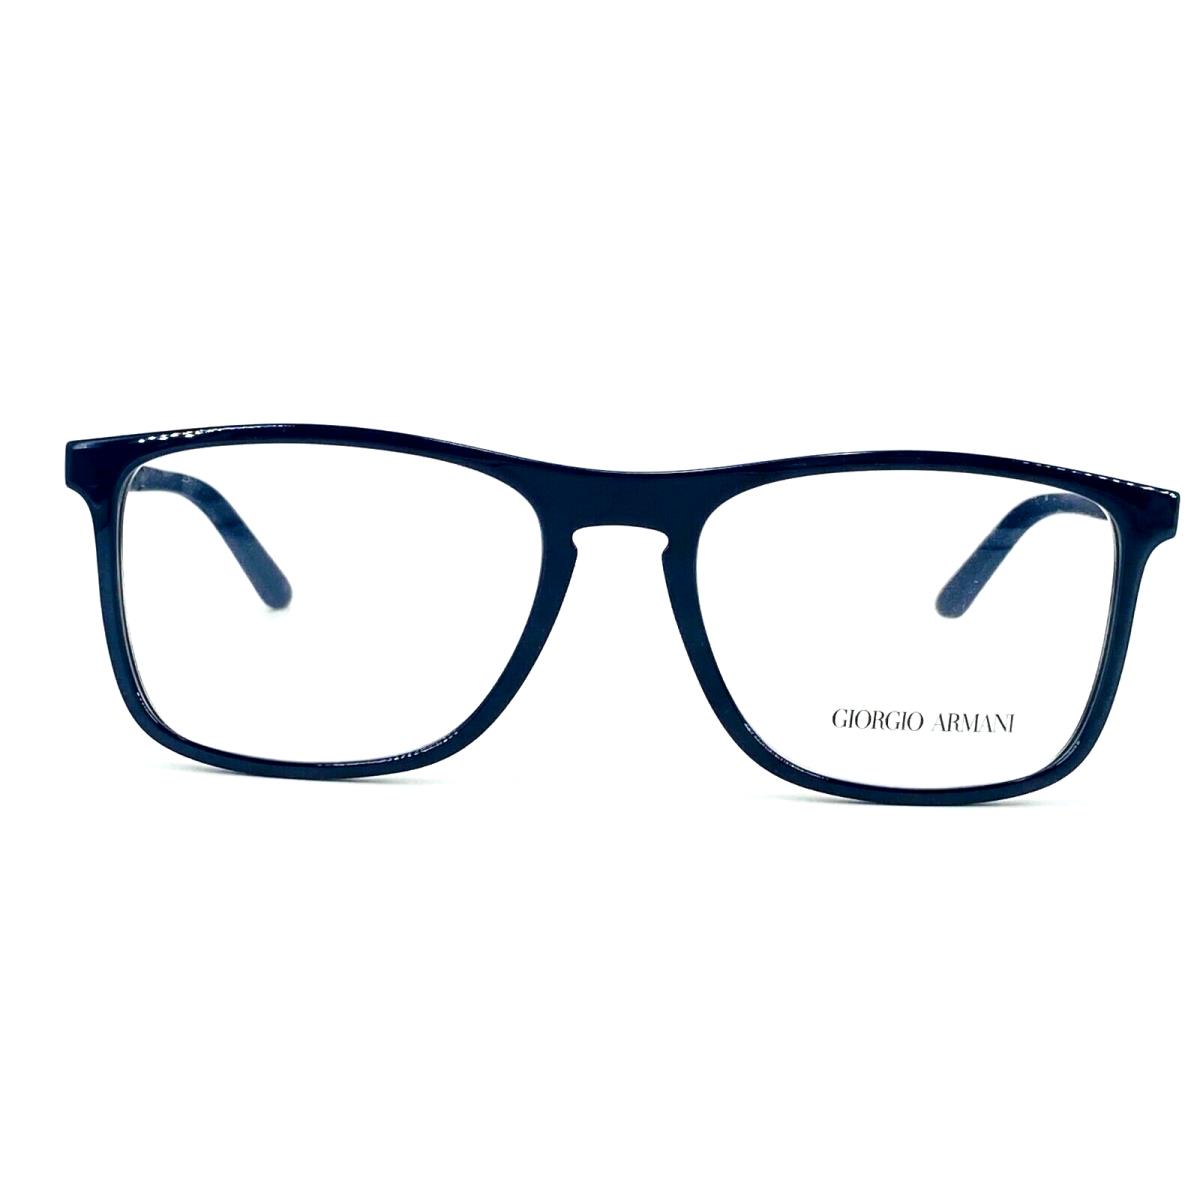 Giorgio Armani eyeglasses  - 5145 Shiny Blue , Blue Frame 0